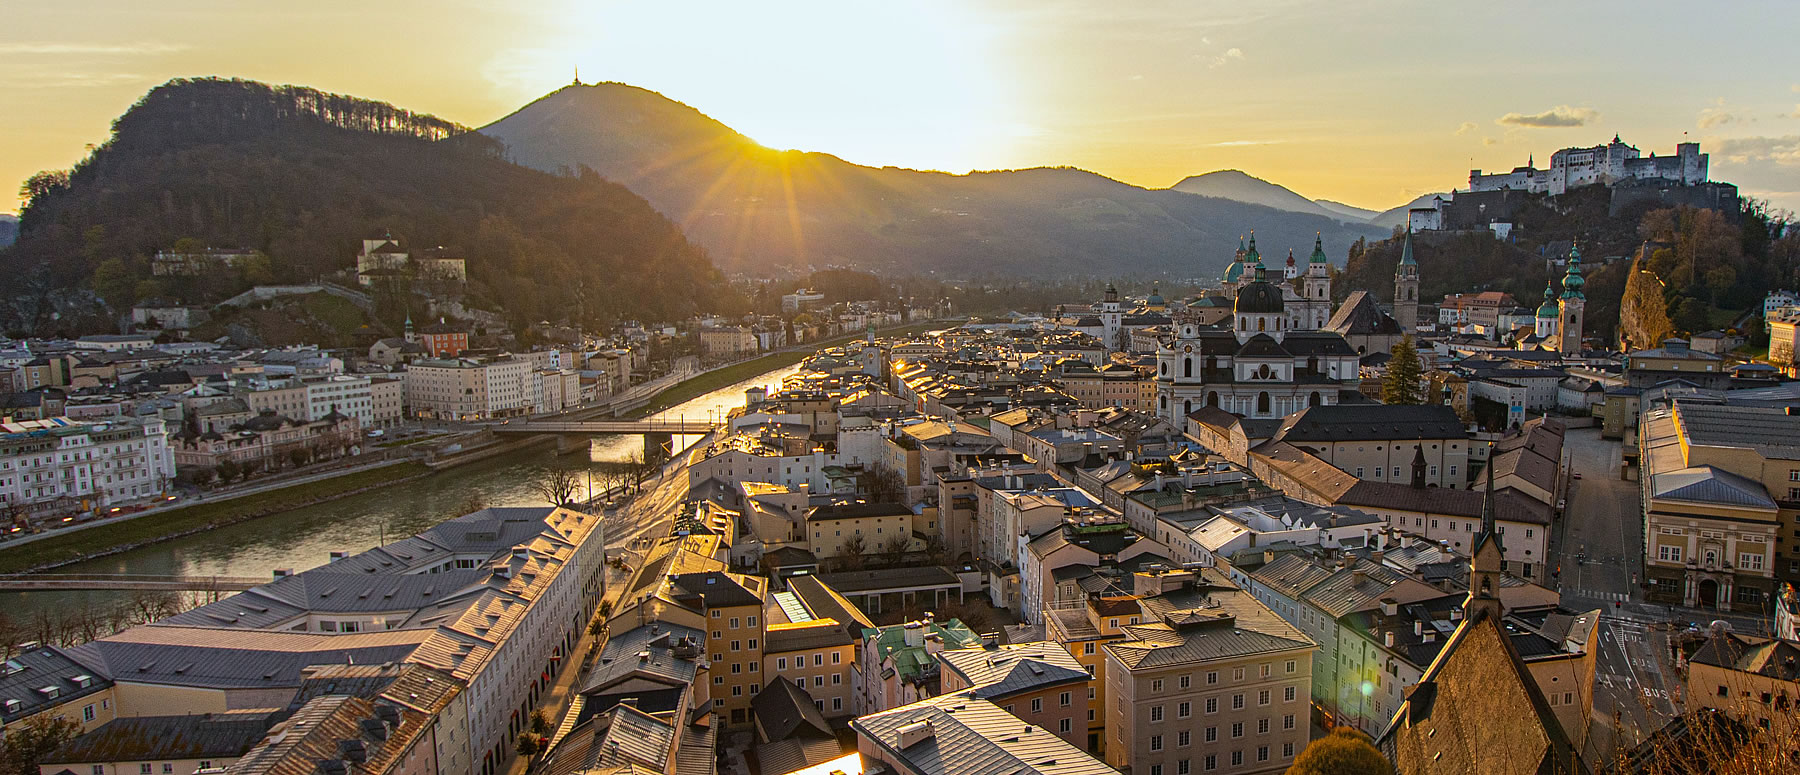 Sonnenaufgang im Sommer über der Stadt Salzburg